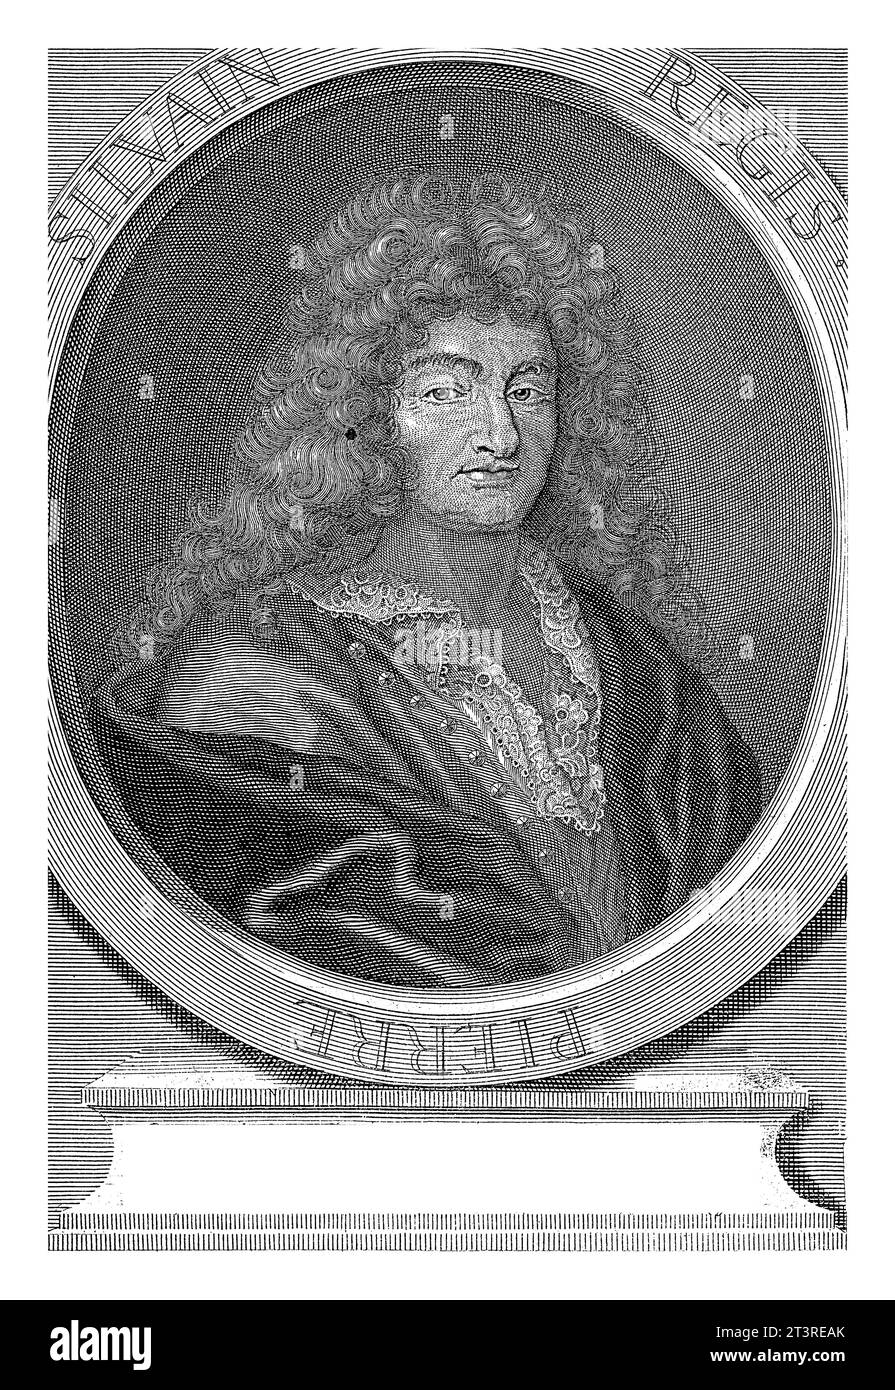 Portrait de Pierre-Silvain Regis, Pieter van Gunst, 1659 - 1731 Pierre-Silvain Regis, philosophe français. L'impression a des légendes françaises sur son ph Banque D'Images